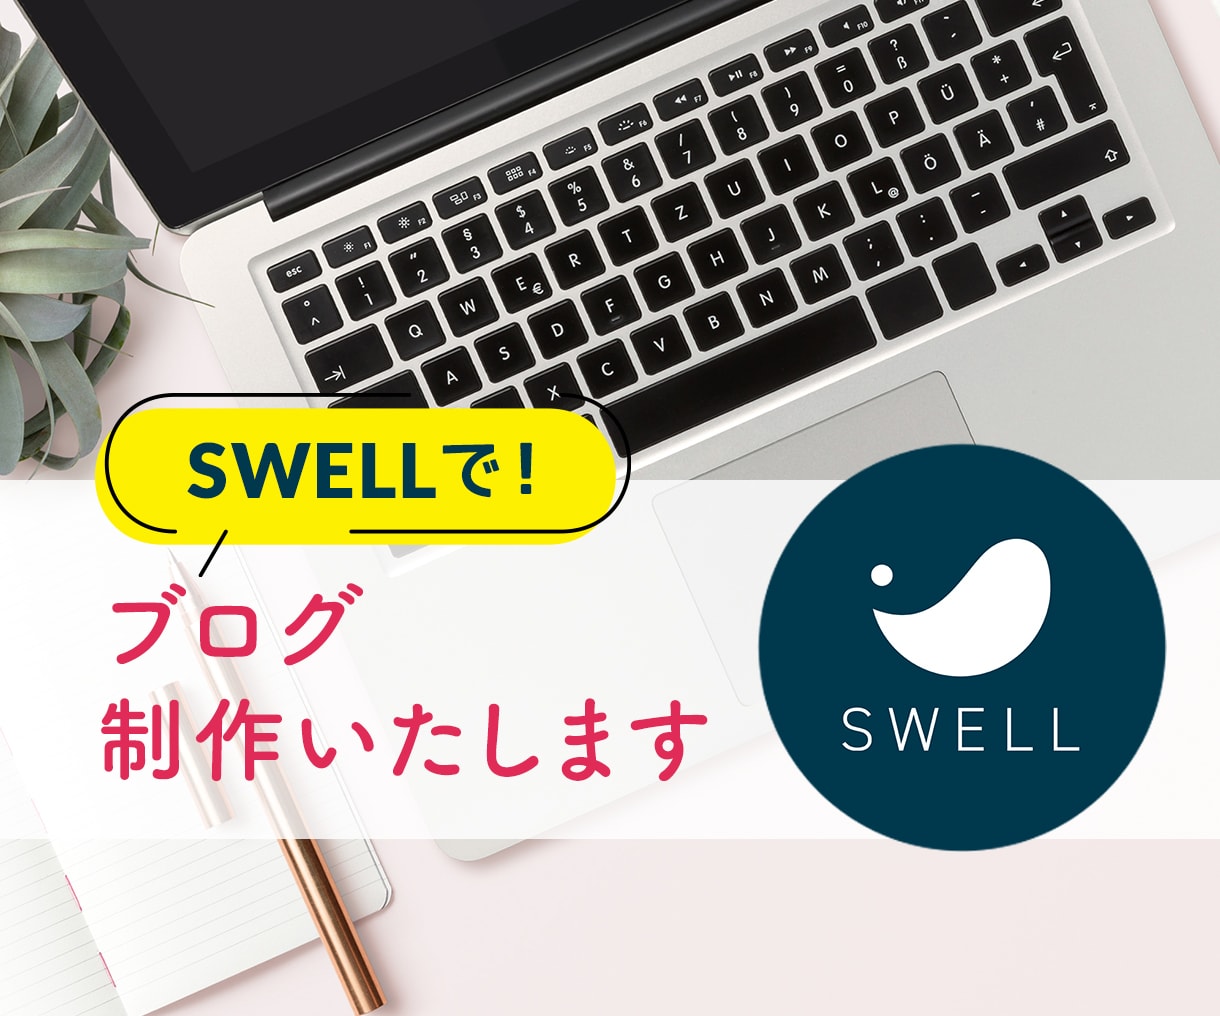 SWELLで！アフィリエイトブログ制作いたします 人気のテーマ「SWELL」を使用し、ブログ制作代行します。 イメージ1